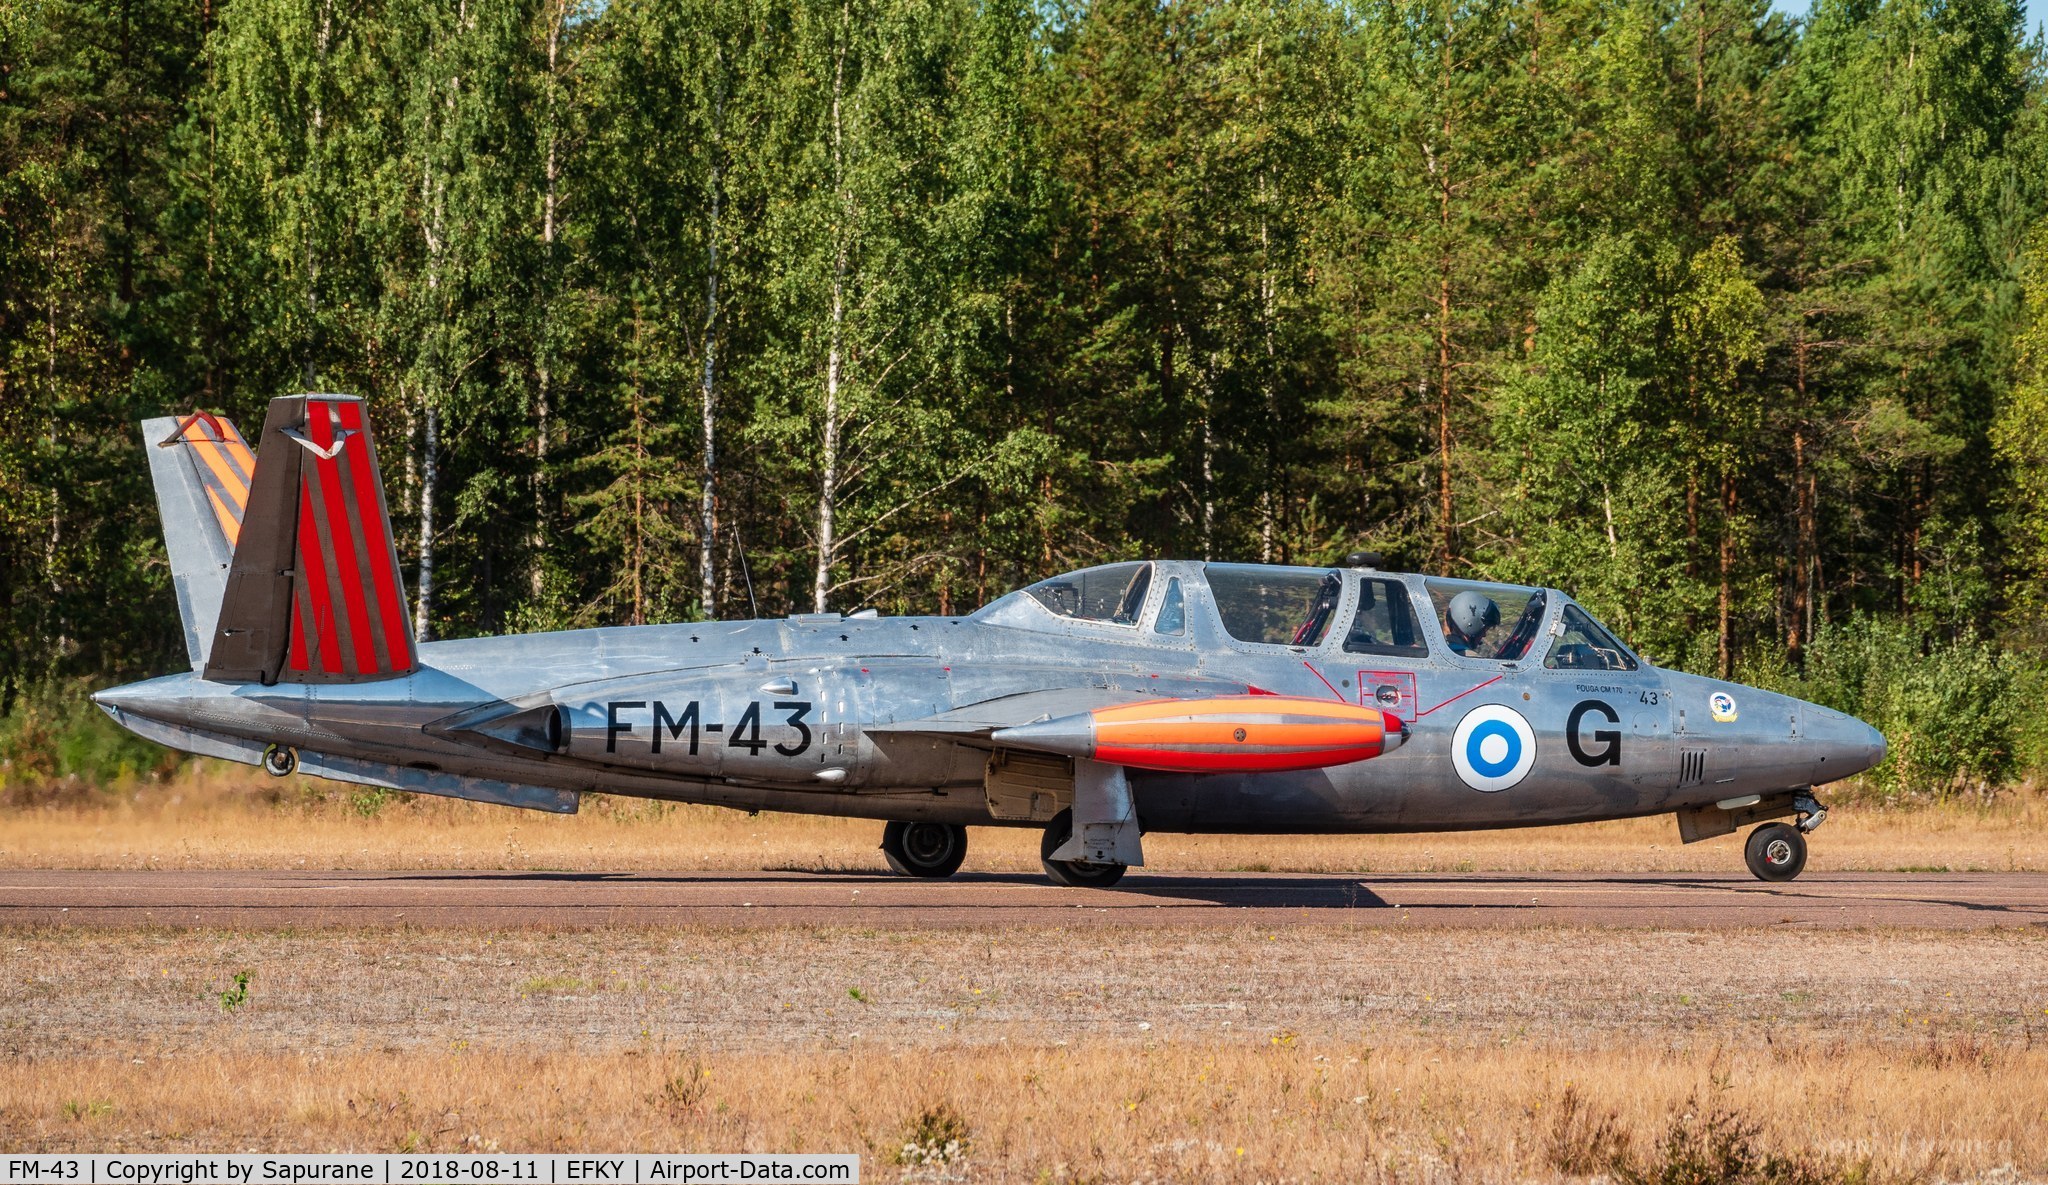 FM-43, Fouga (Valmet) CM-170R Magister C/N FM-43, Fouga CM 170 Magister FM-43